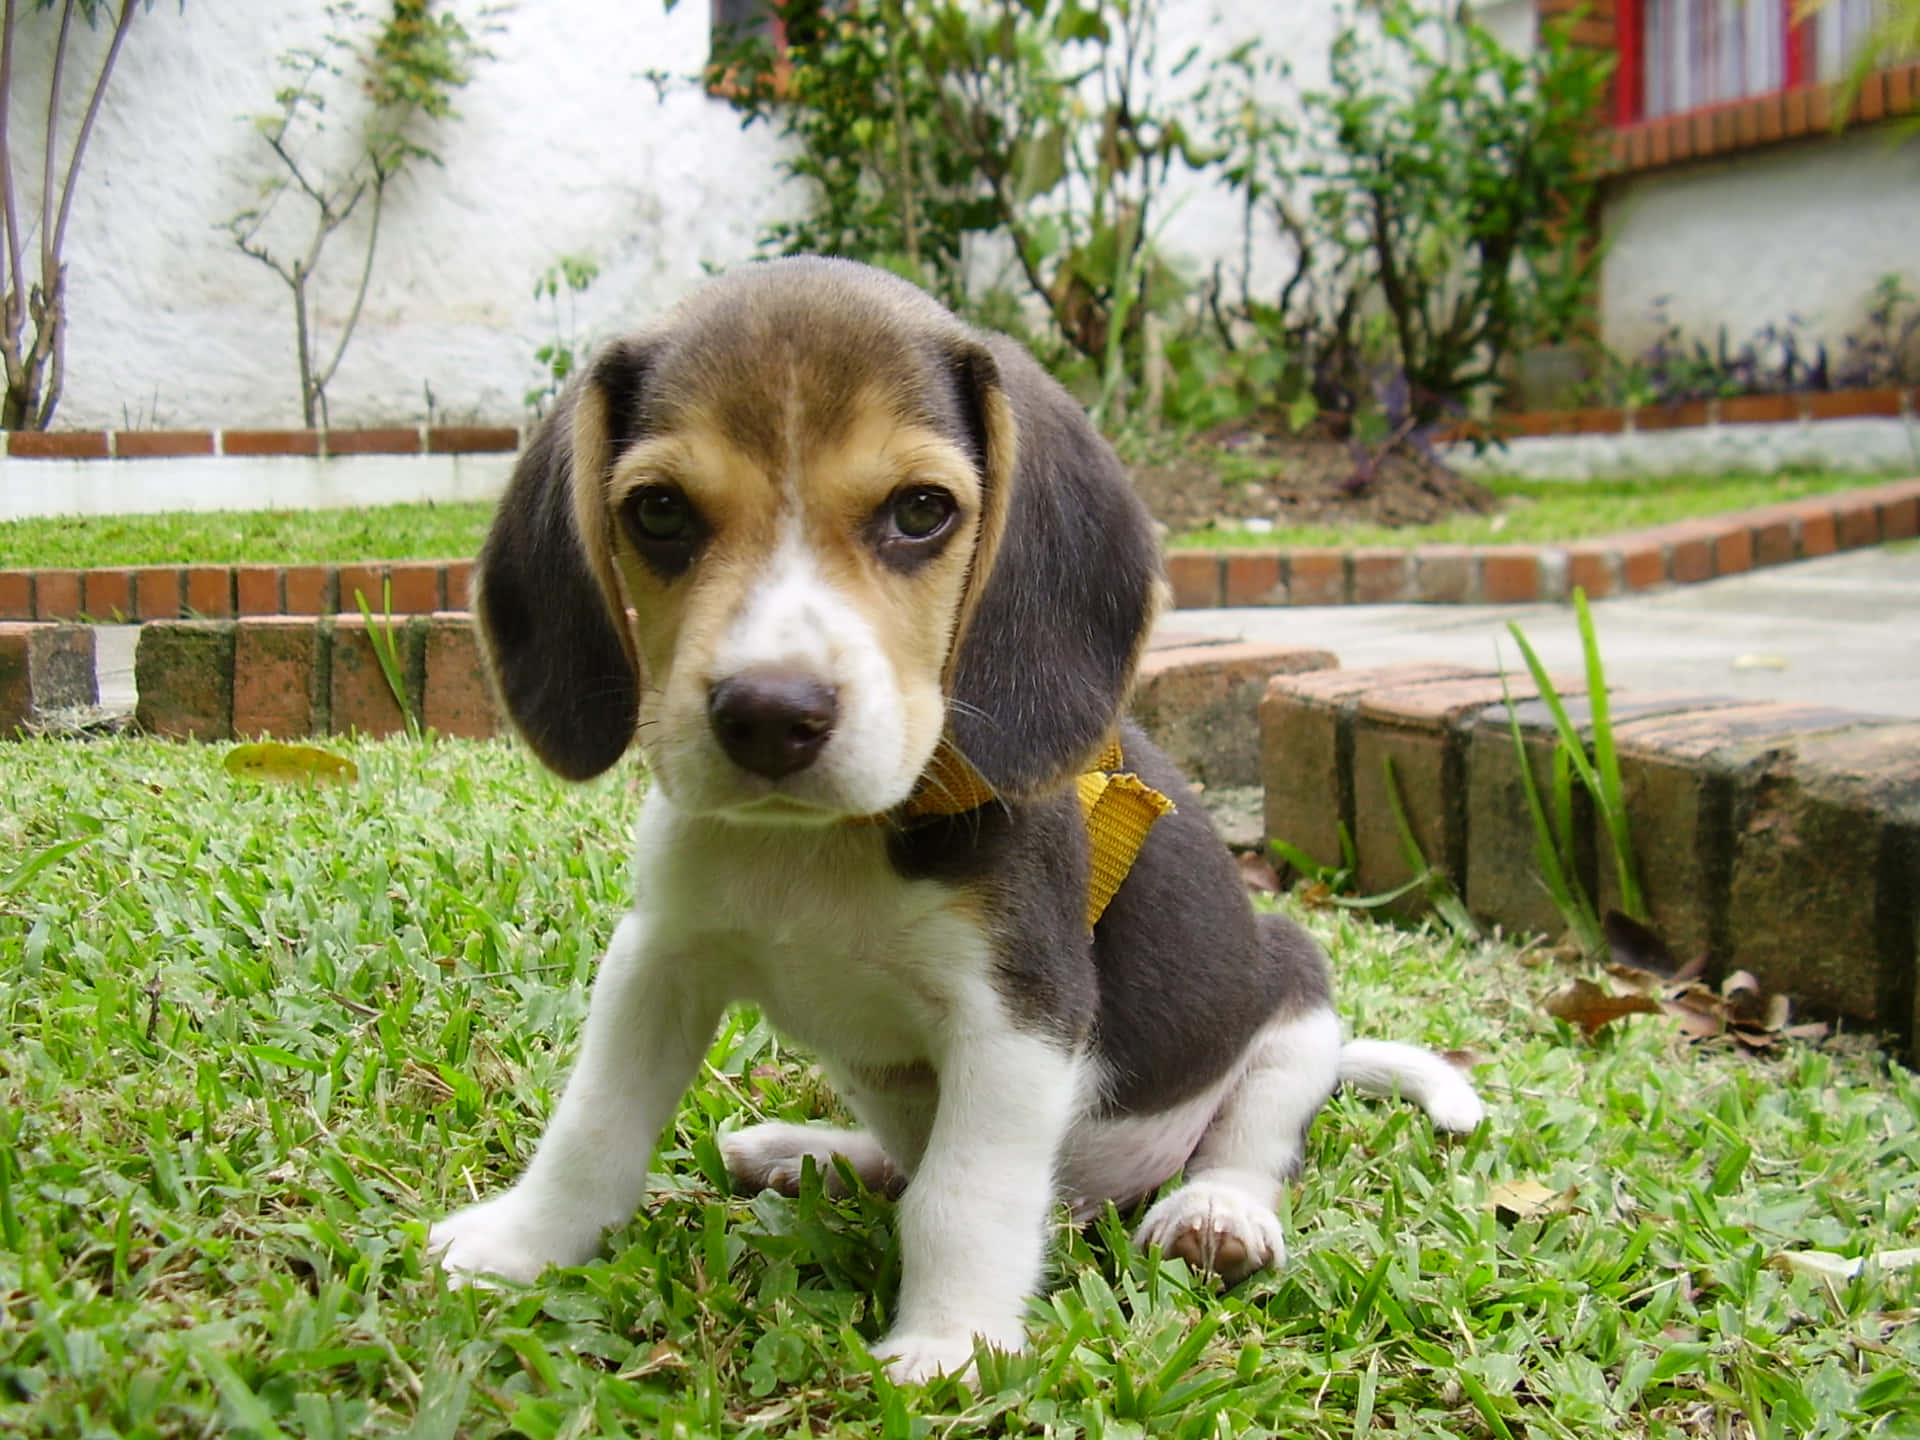 Adorable beagle enjoys a sunny day